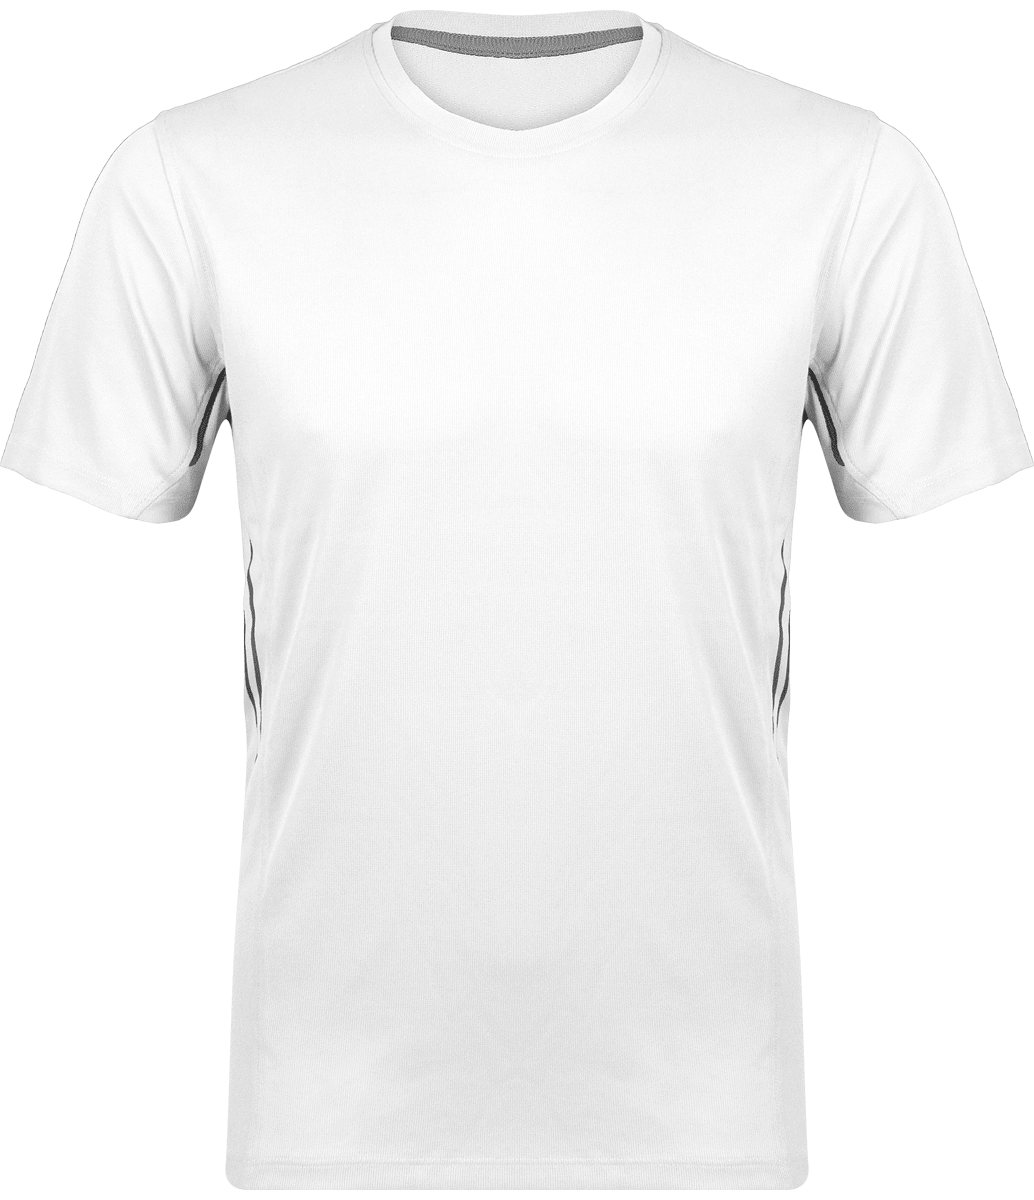 Camiseta Hombre Deporte | Ligera Y Transpirable | Bordado Y Estampado White / Silver